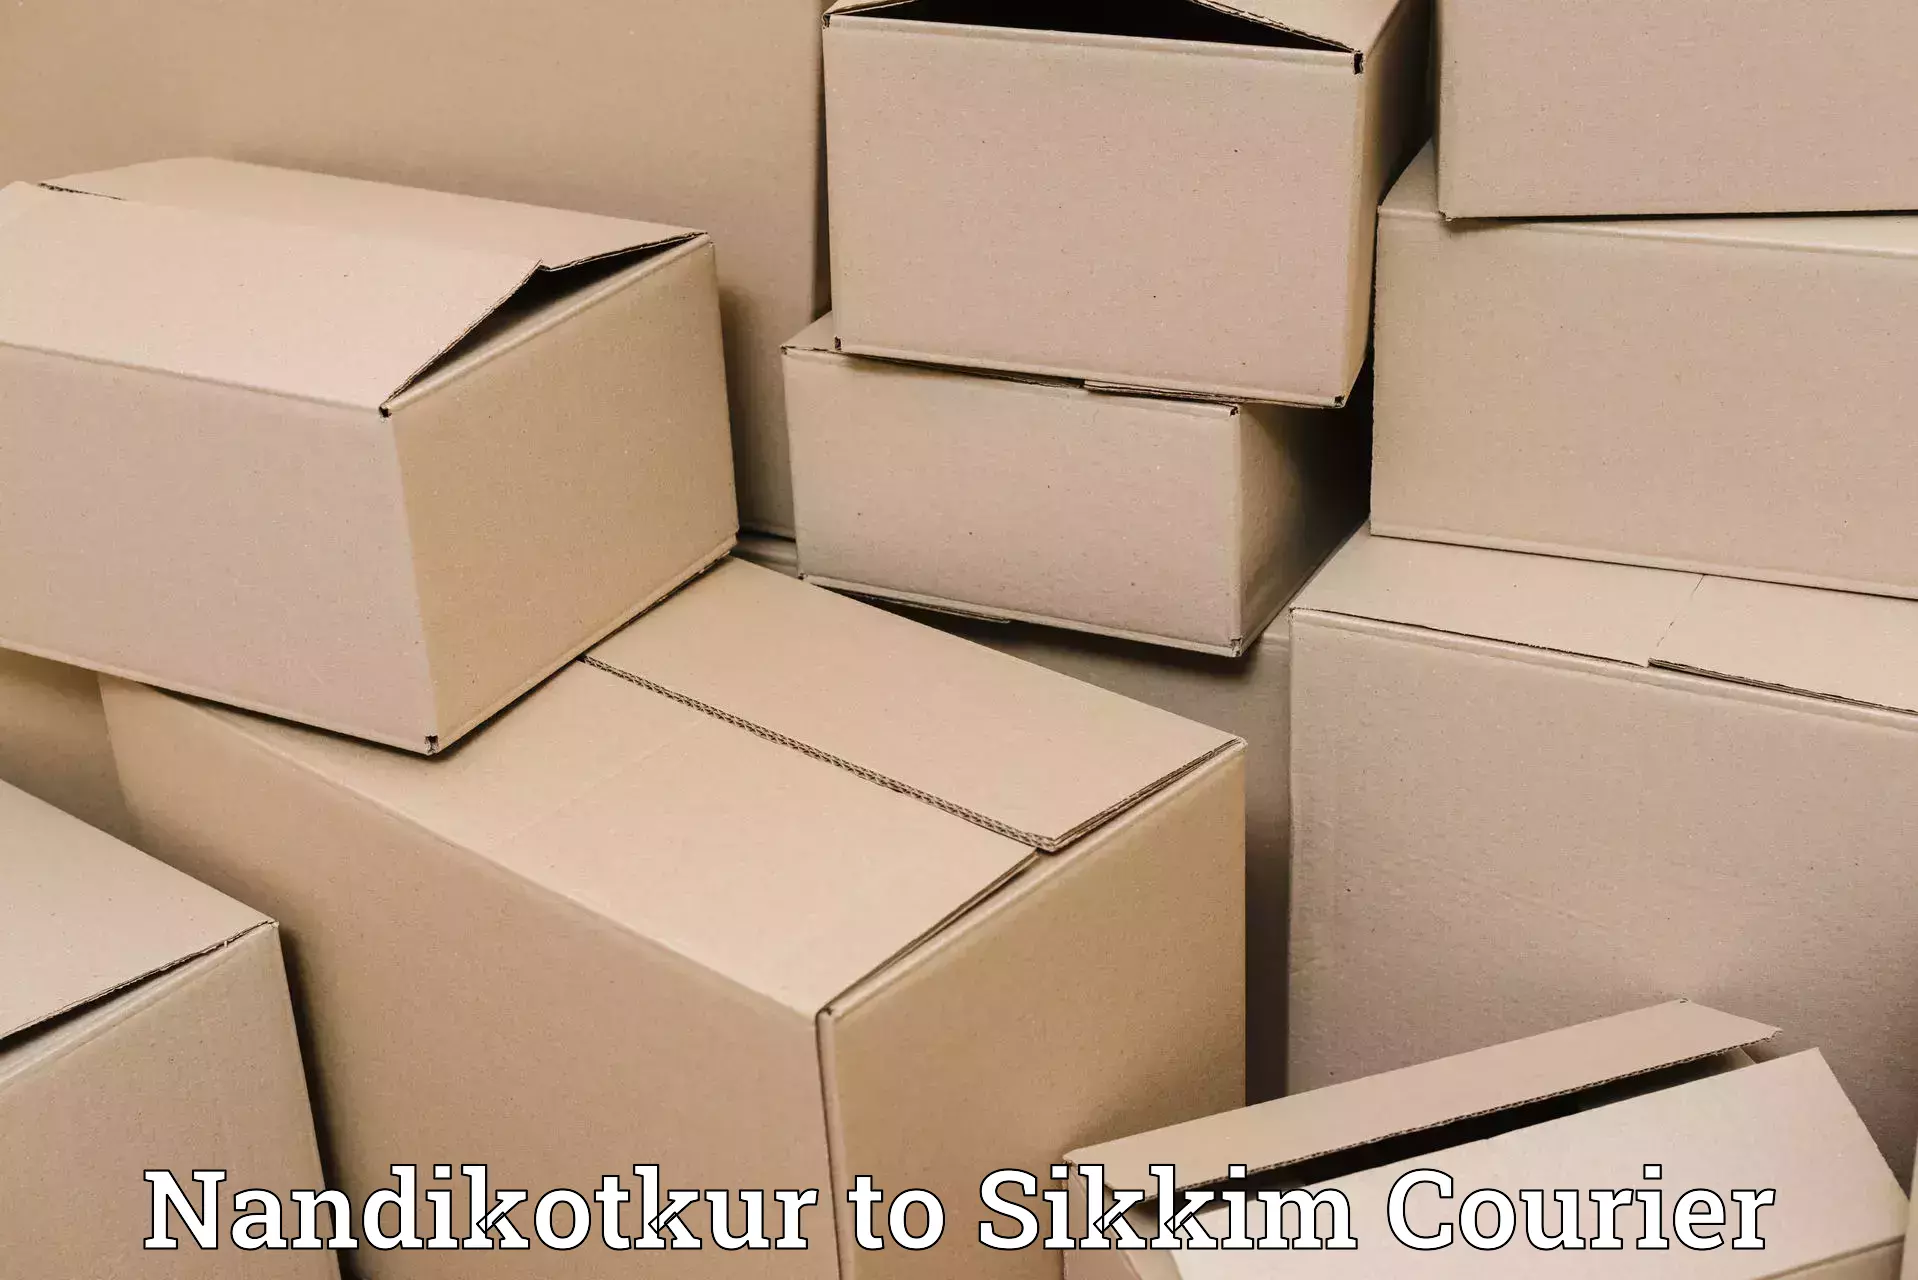 Seamless shipping service Nandikotkur to NIT Sikkim